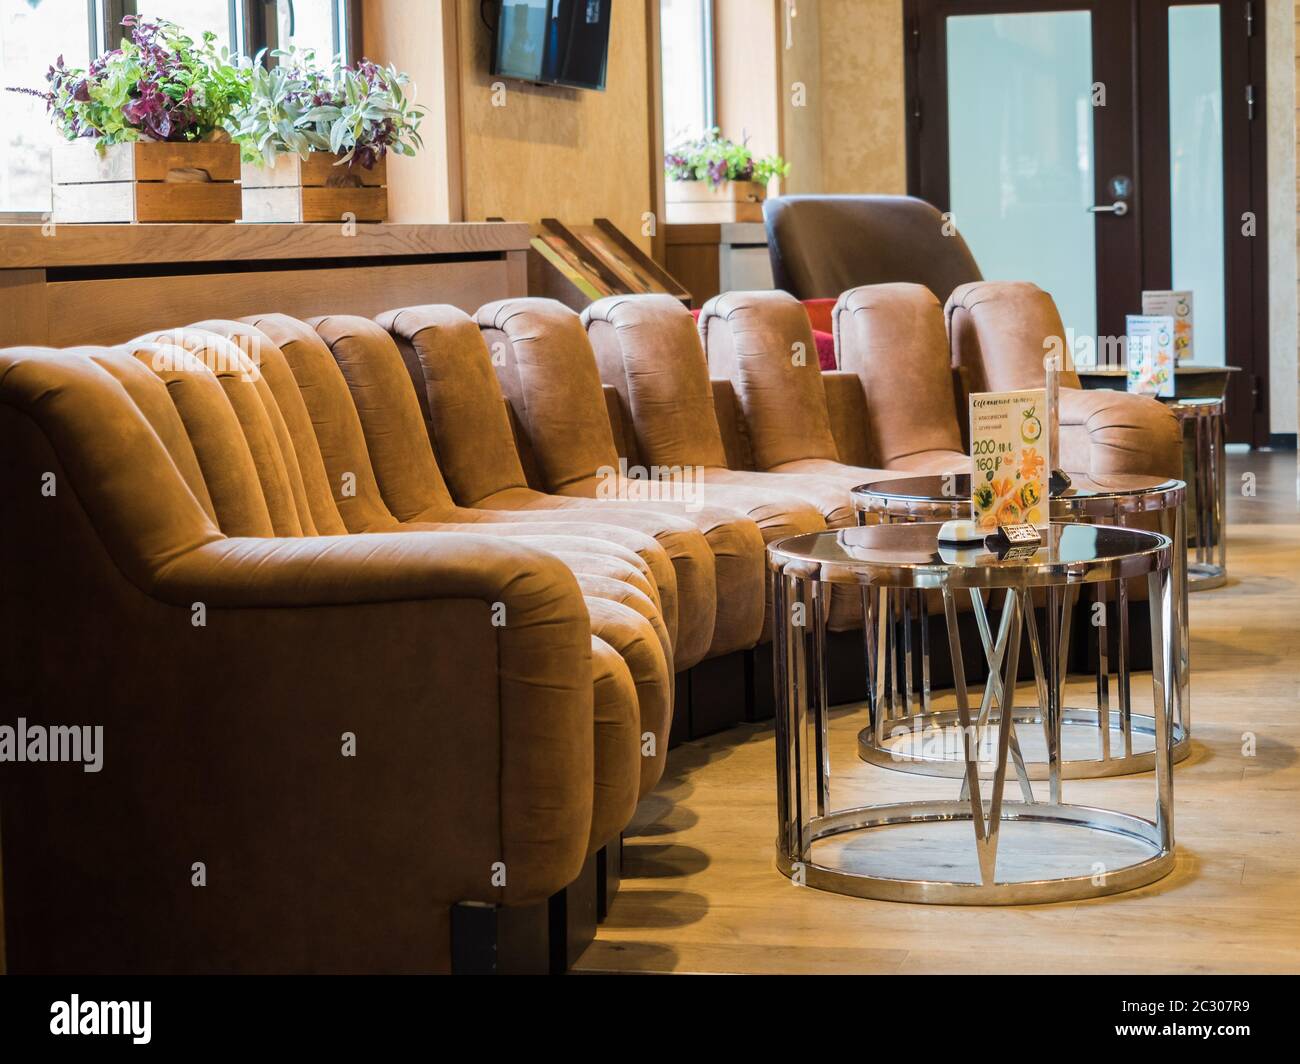 Hall per gli ospiti dell'hotel con un bel divano morbido e un tavolino da caffè. Rosa Khutor. Altezza 1100 m. Russia Sochi 08 04 2019 Foto Stock